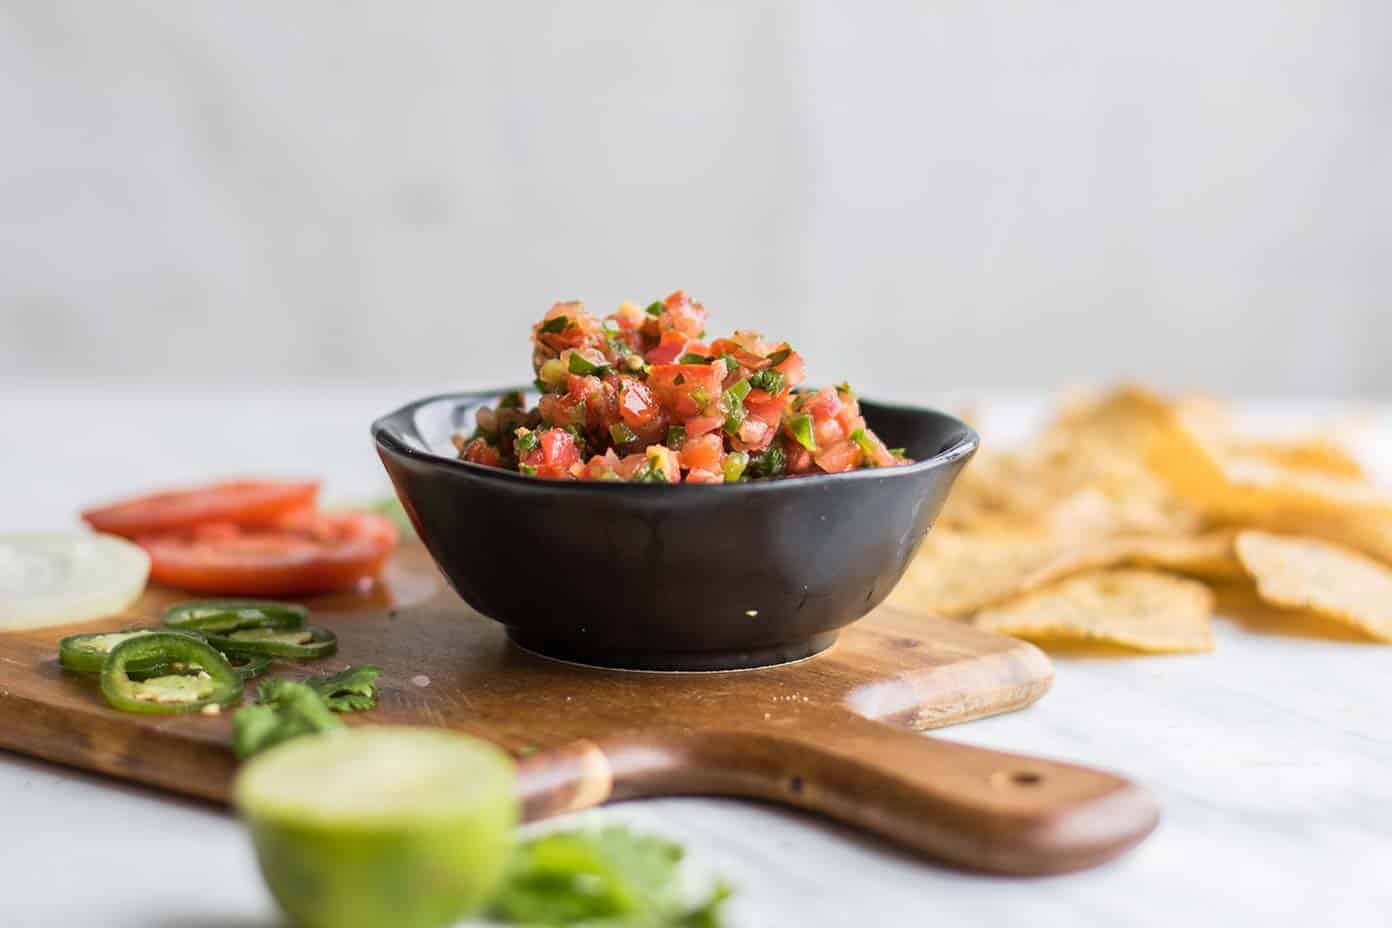 https://sunkissedkitchen.com/wp-content/uploads/2018/04/spicy-salsa-recipe-rc-1.jpg